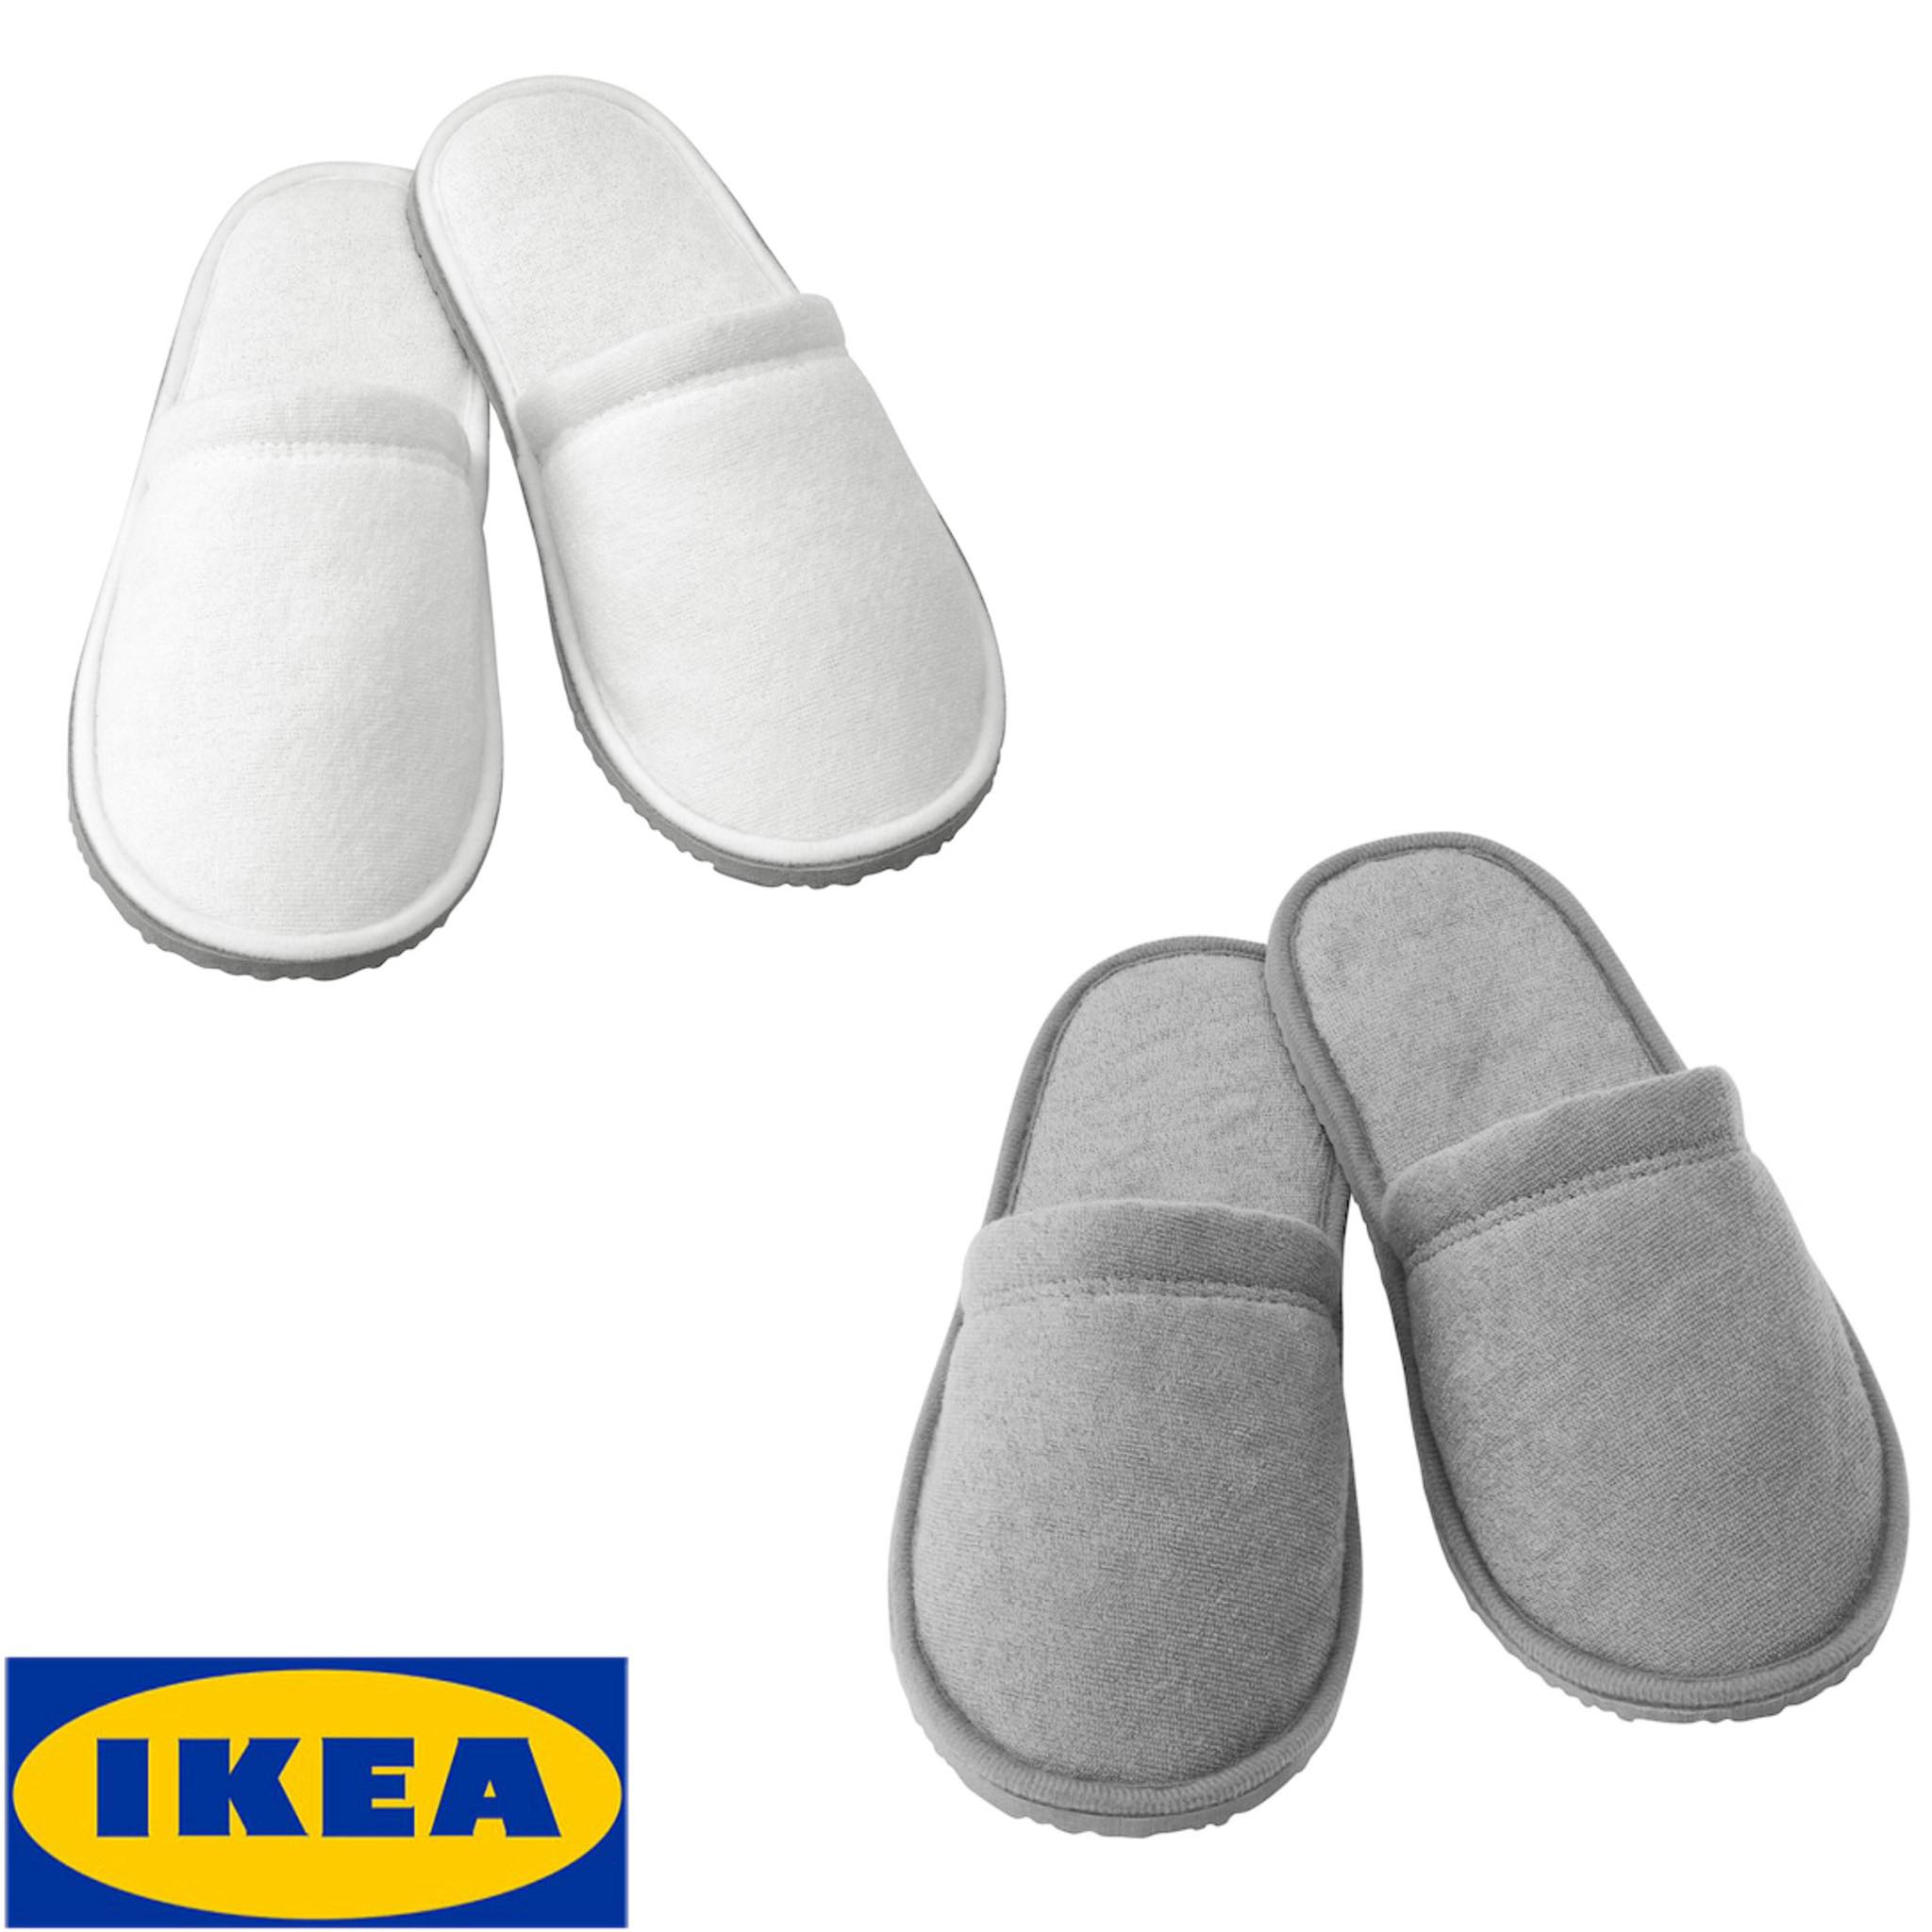 IKEA ของแท้ TÅSJÖN ทัวเควิน รองเท้าเดินในบ้าน, ขาว,เทา ขนาด S/M,L/XL